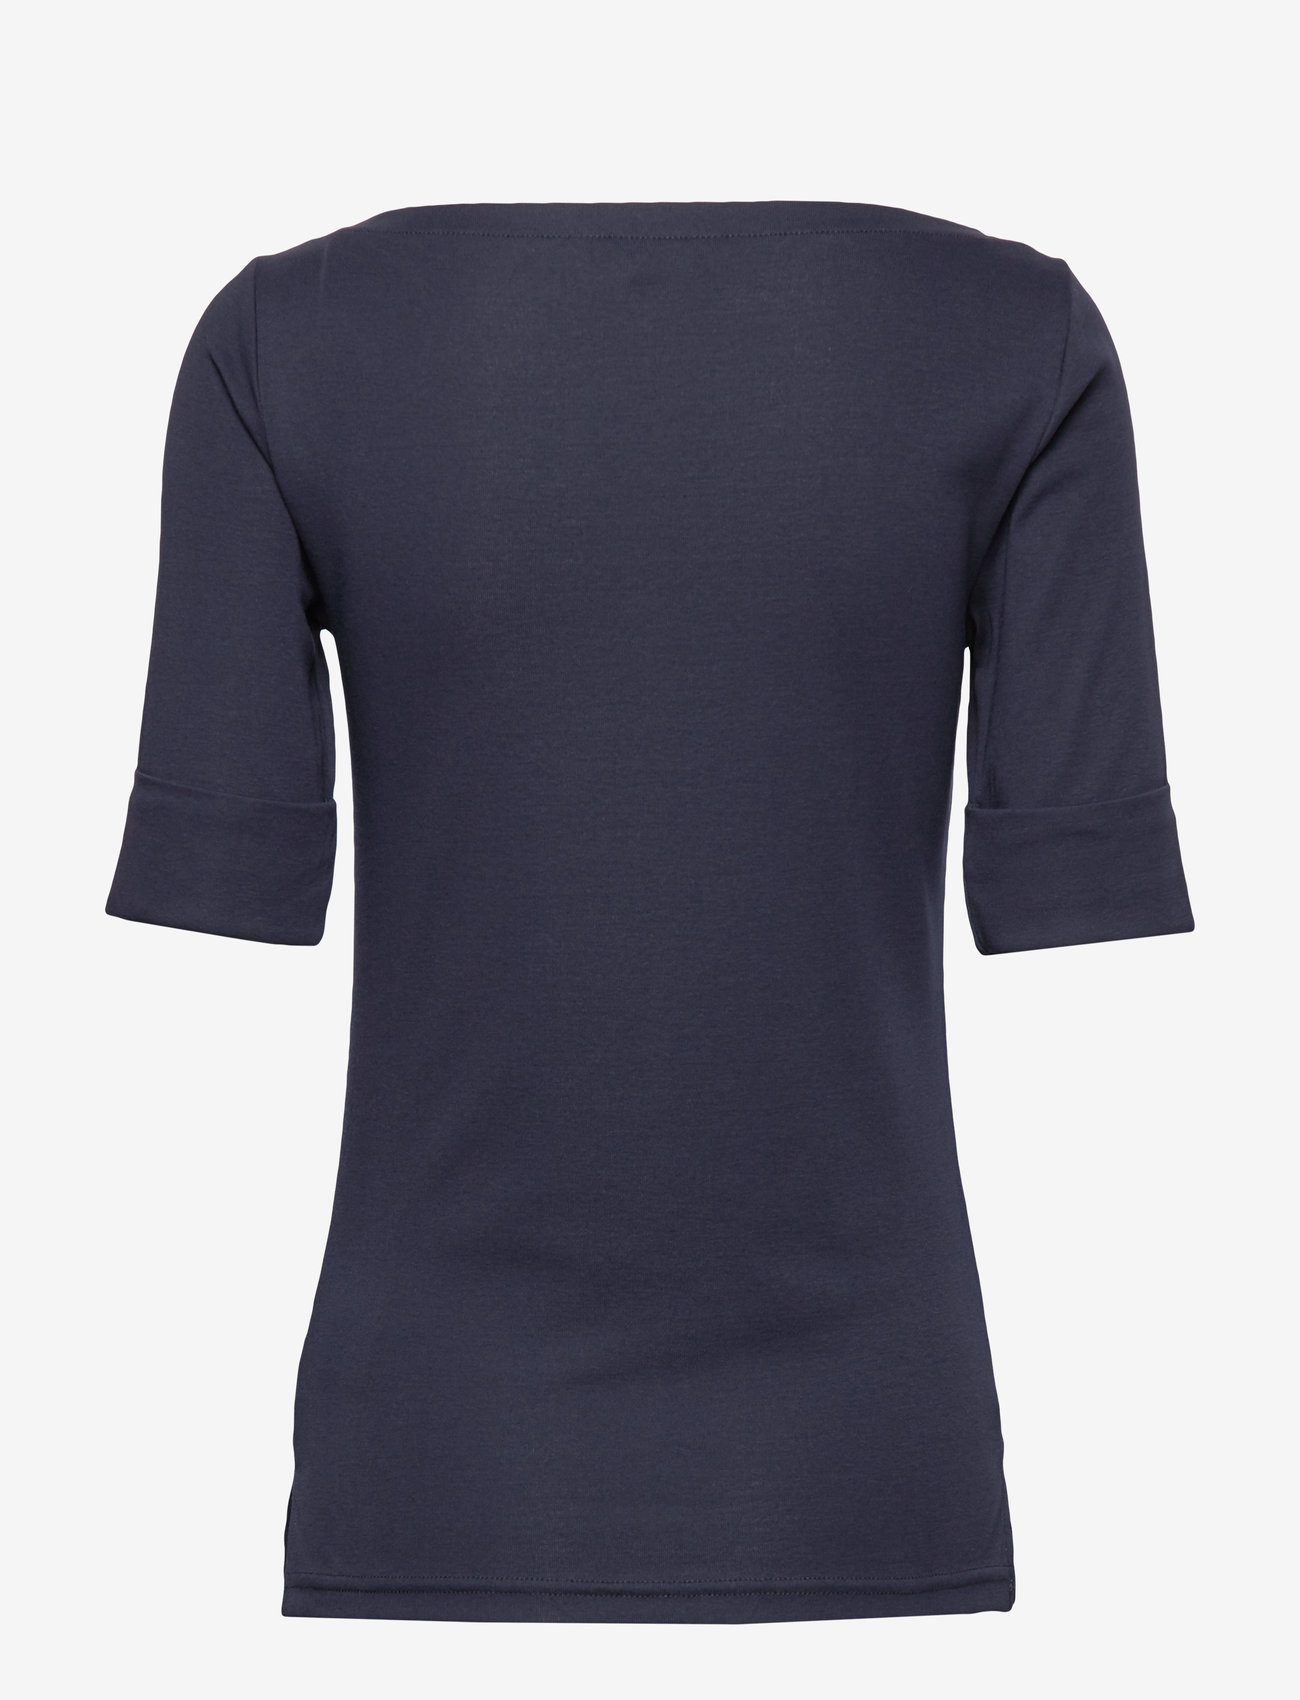 Lauren Ralph Lauren - Cotton Boatneck Top - t-shirts - lauren navy - 1